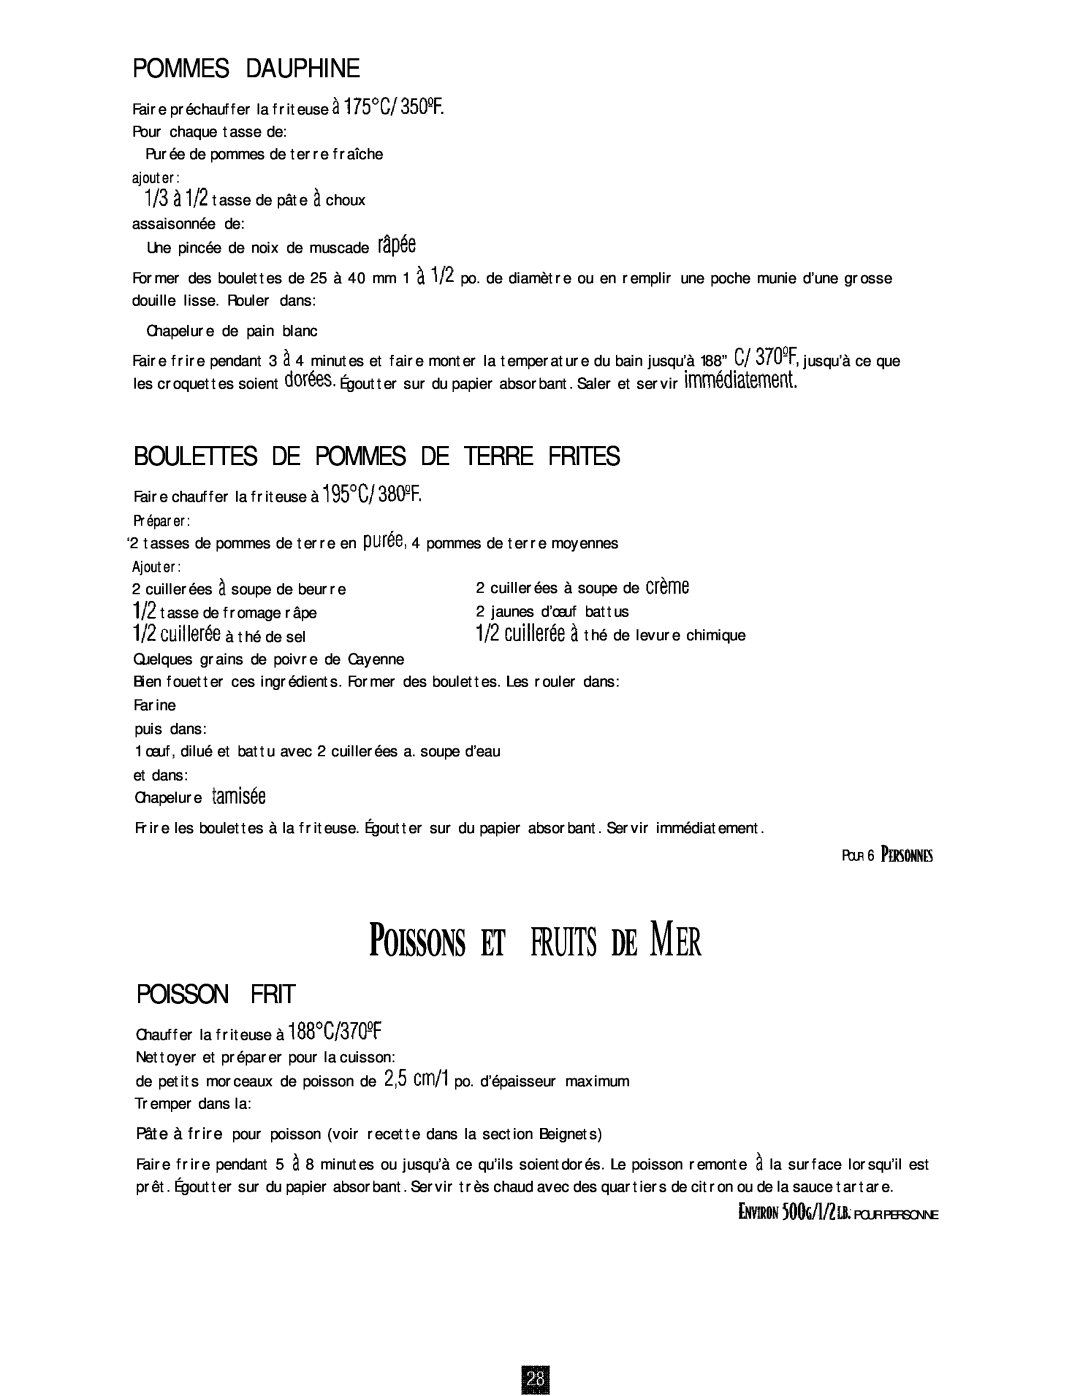 Oster 3246 manual Poissons Et Fruits De Mer, Pommes Dauphine, Boulettes De Pommes De Terre Frites, Poisson Frit 